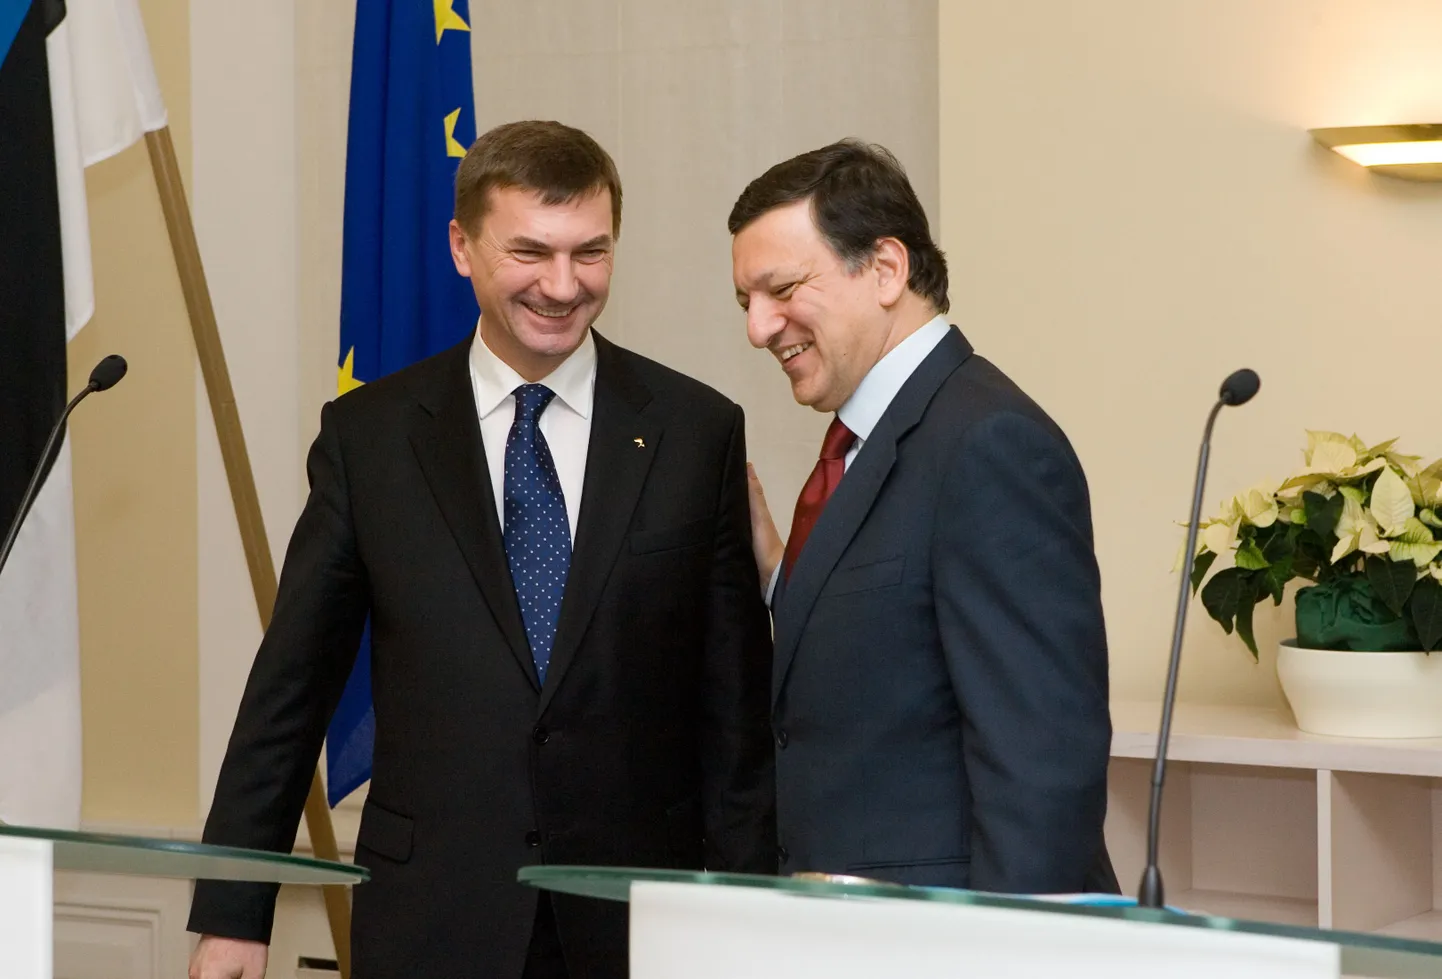 Euroopa Komisjoni president José Manuel Barroso ja Eesti peaminister Andrus Ansip kohtumisel Stenbocki majas.